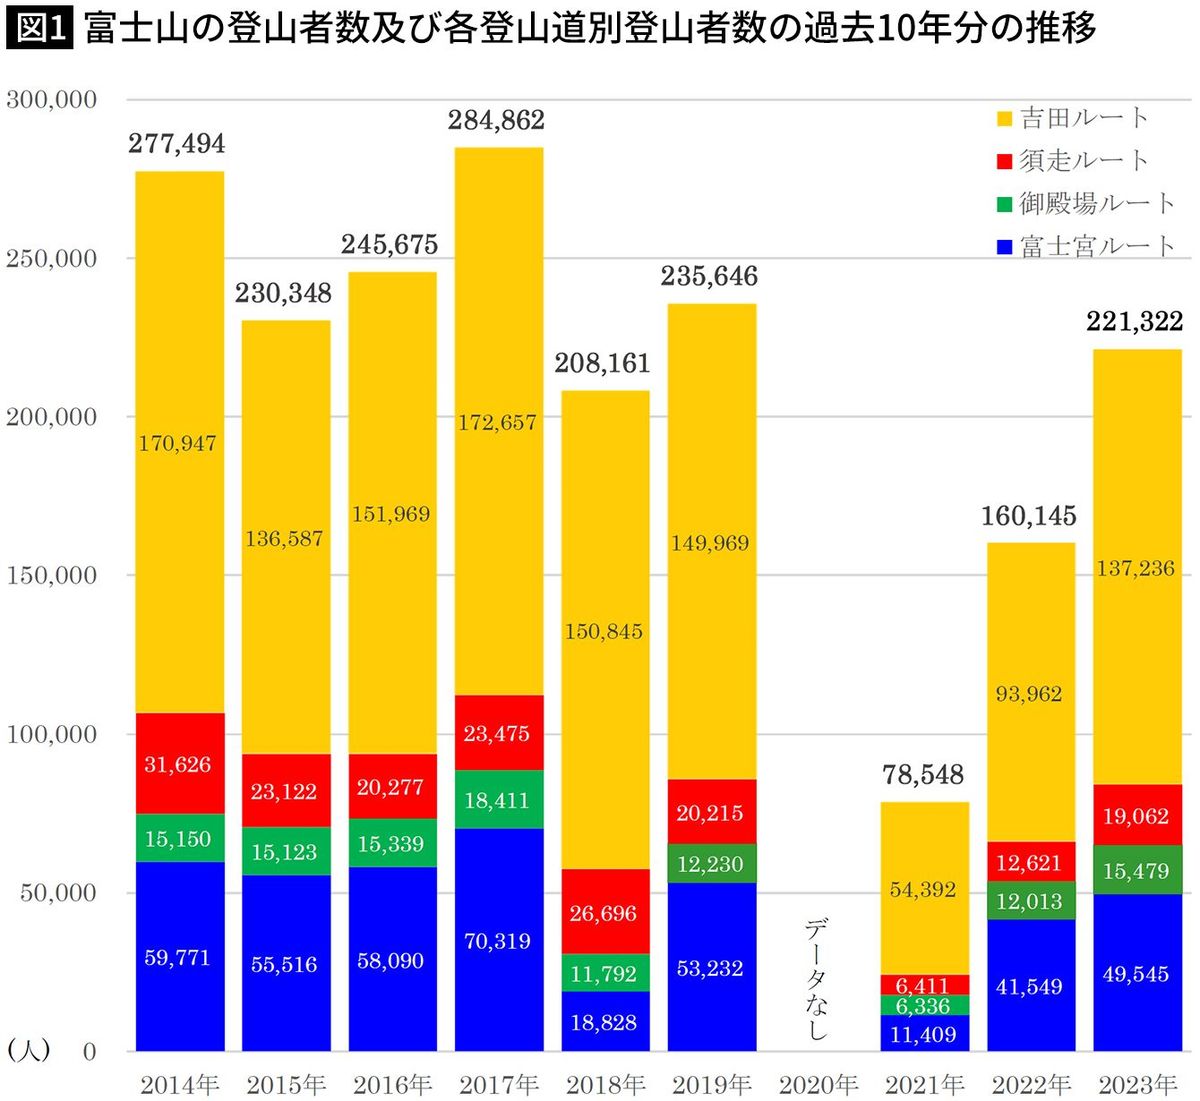 【図1】富士山の登山者数及び各登山道別登山者数の過去10年分の推移